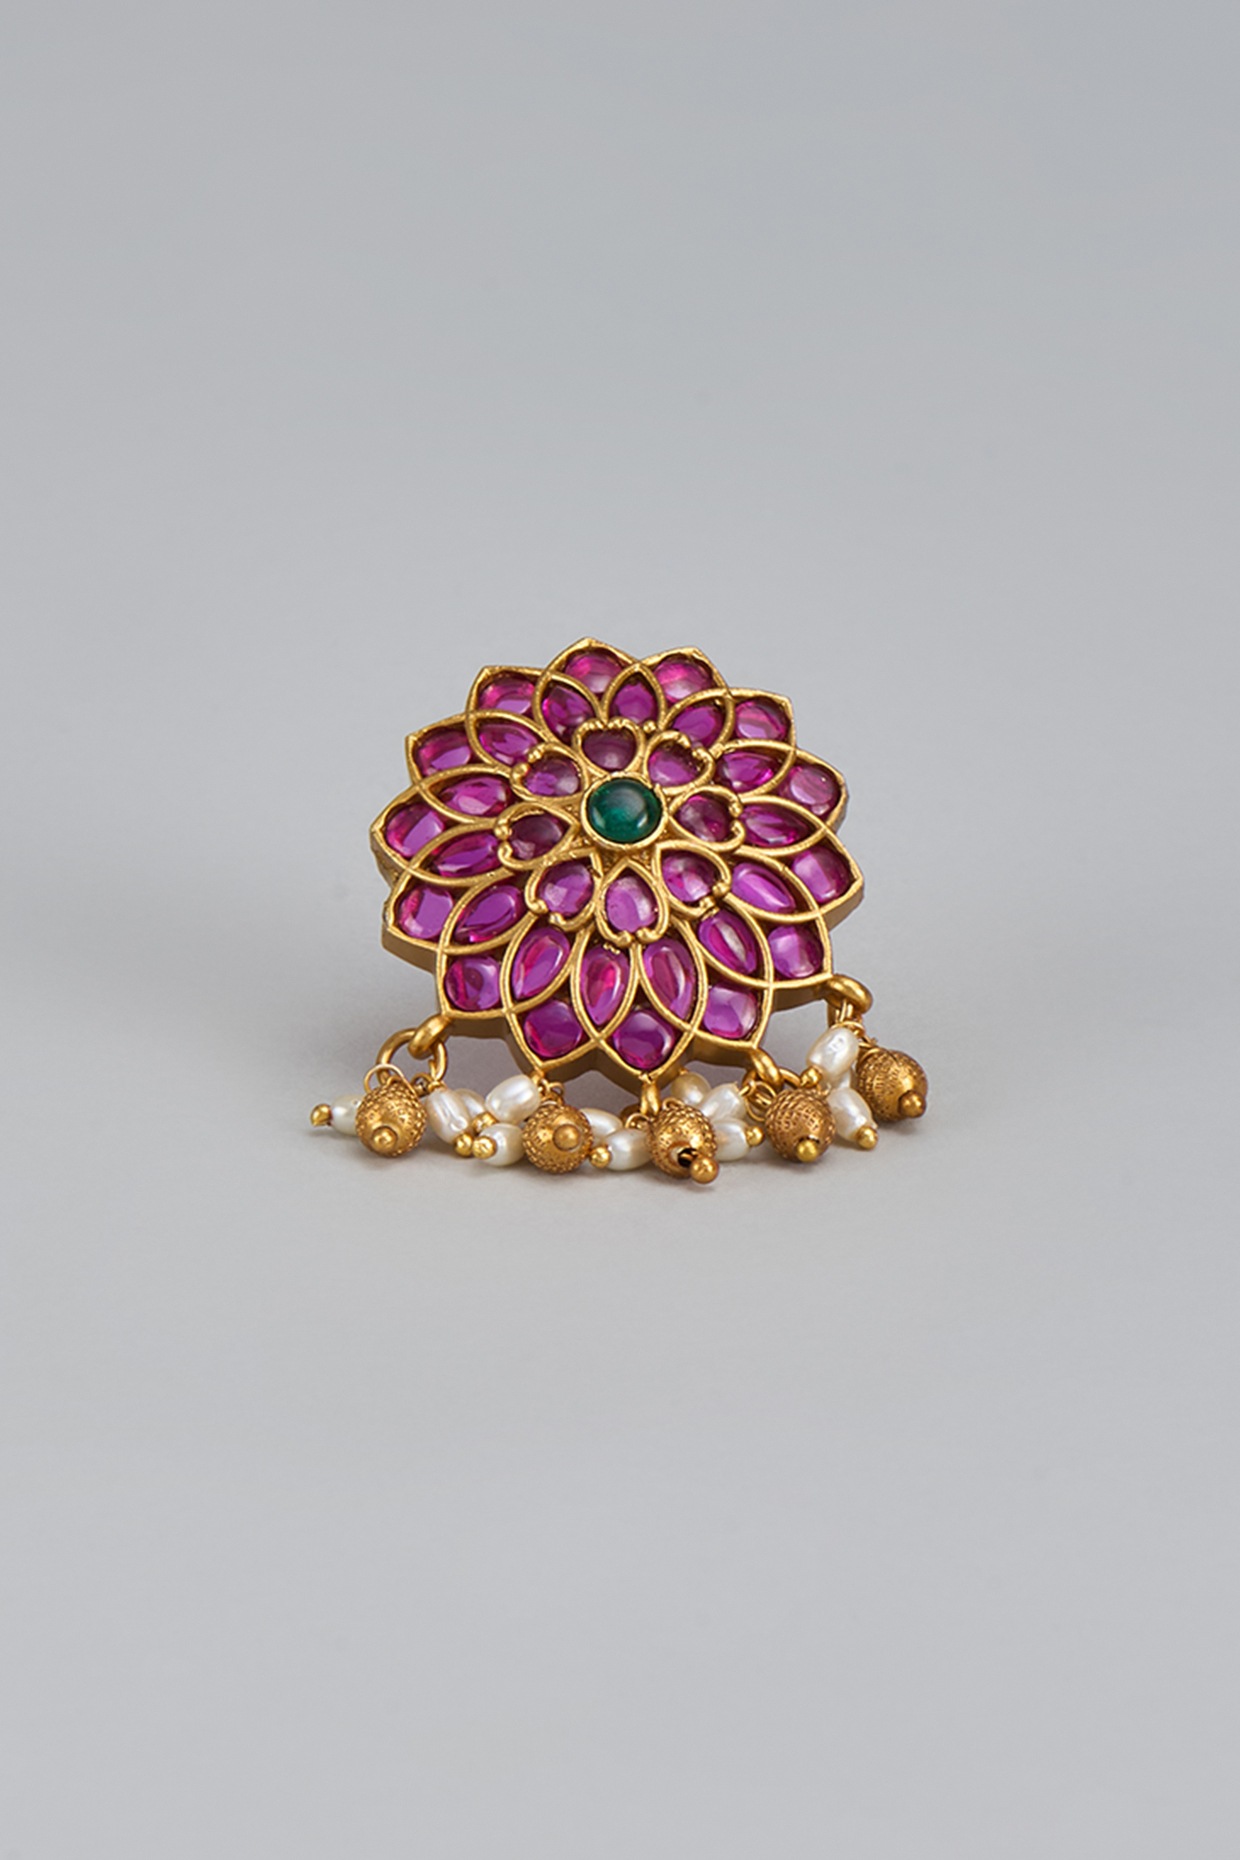 Beautiful Jodha Akbar Style Ring for Women [Jewellery] : Amazon.in:  Jewellery